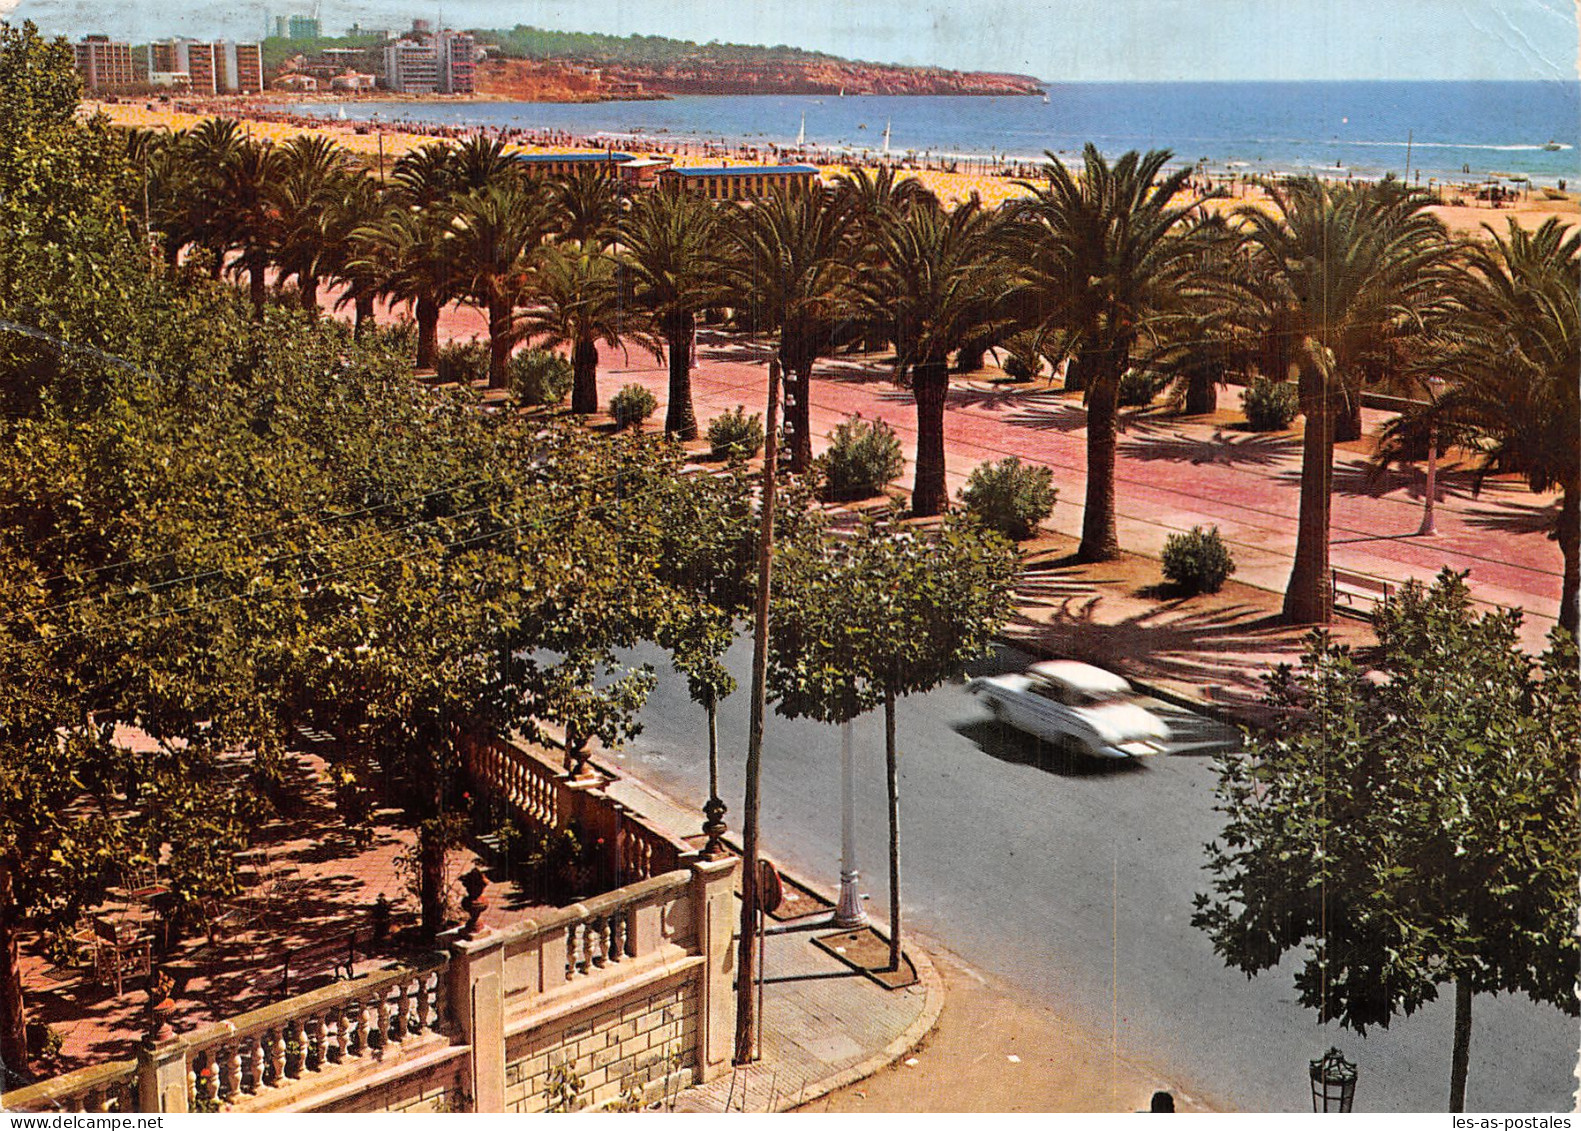 Espagne SALOU COSTA DORADA - Tarragona